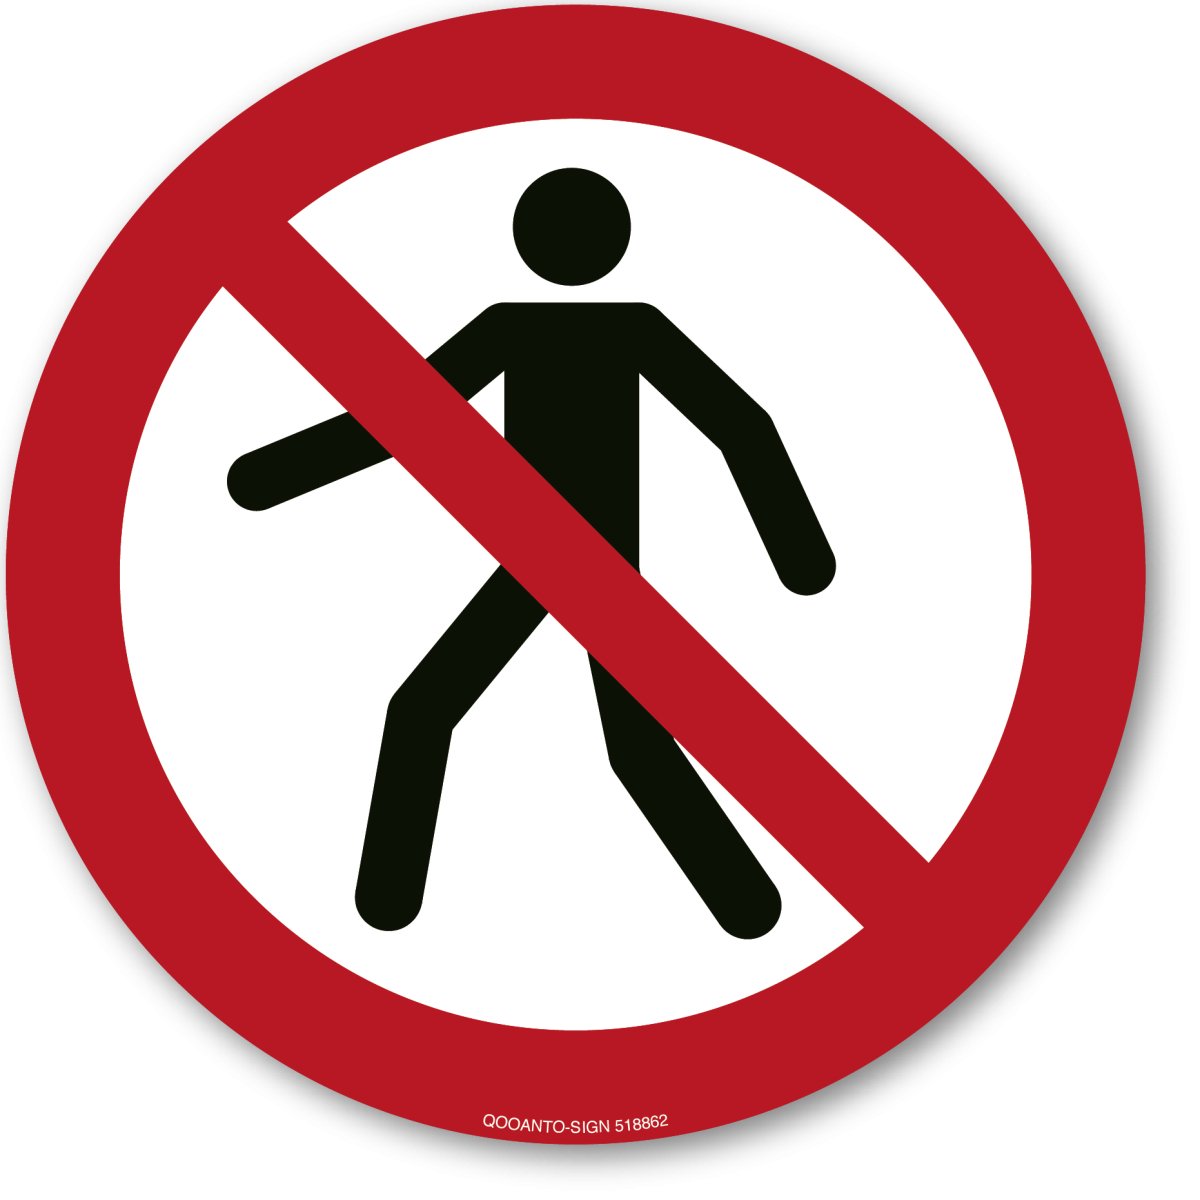 Für Fußgänger Verboten, EN ISO 7010, P004 Verbotsschild oder Aufkleber aus Alu-Verbund oder Selbstklebefolie mit UV-Schutz - QOOANTO-SIGN